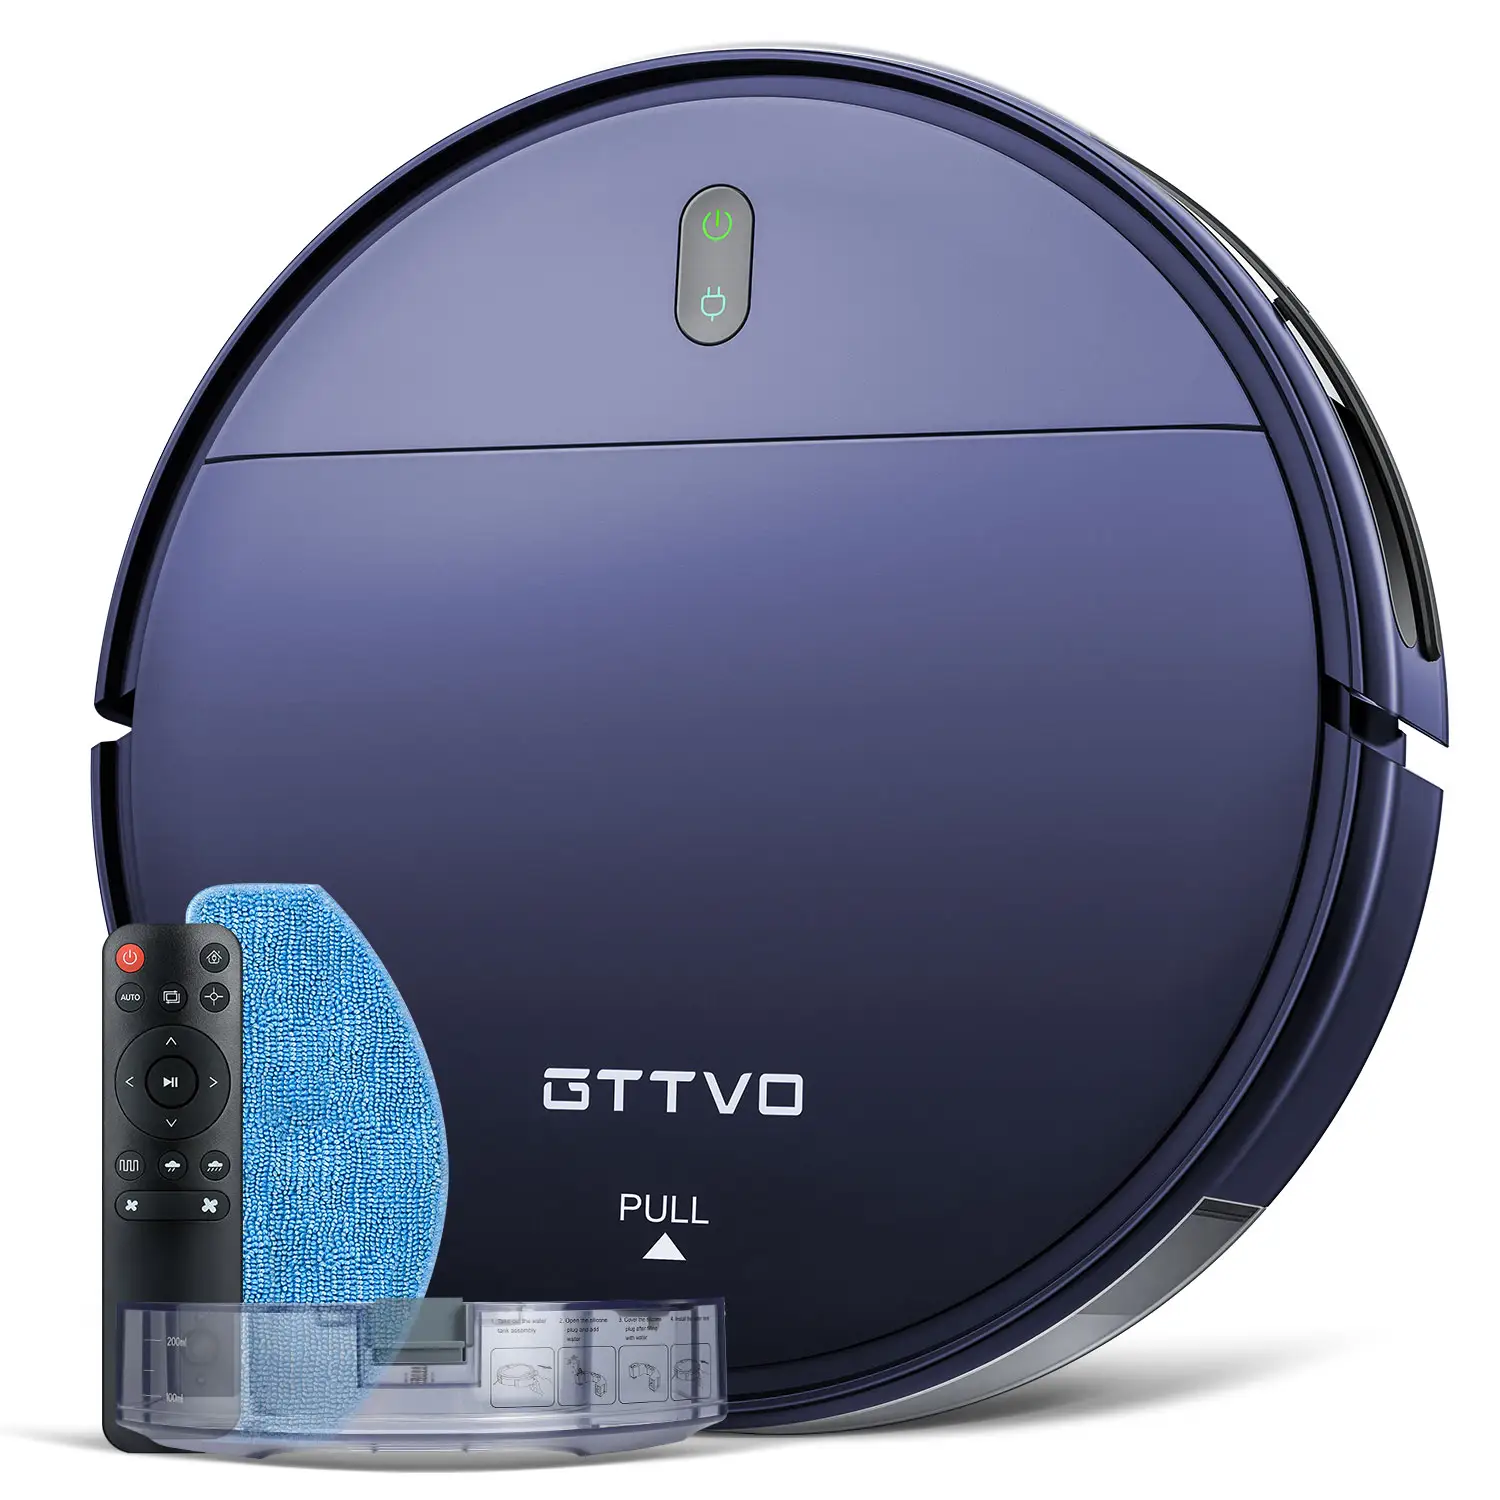 BR151 gttvo Самостоятельная зарядка умный автоматический перезаряжаемый беспроводной Wi-Fi для сухой и влажной уборки для подметания пола Робот-Пылесос и Швабра